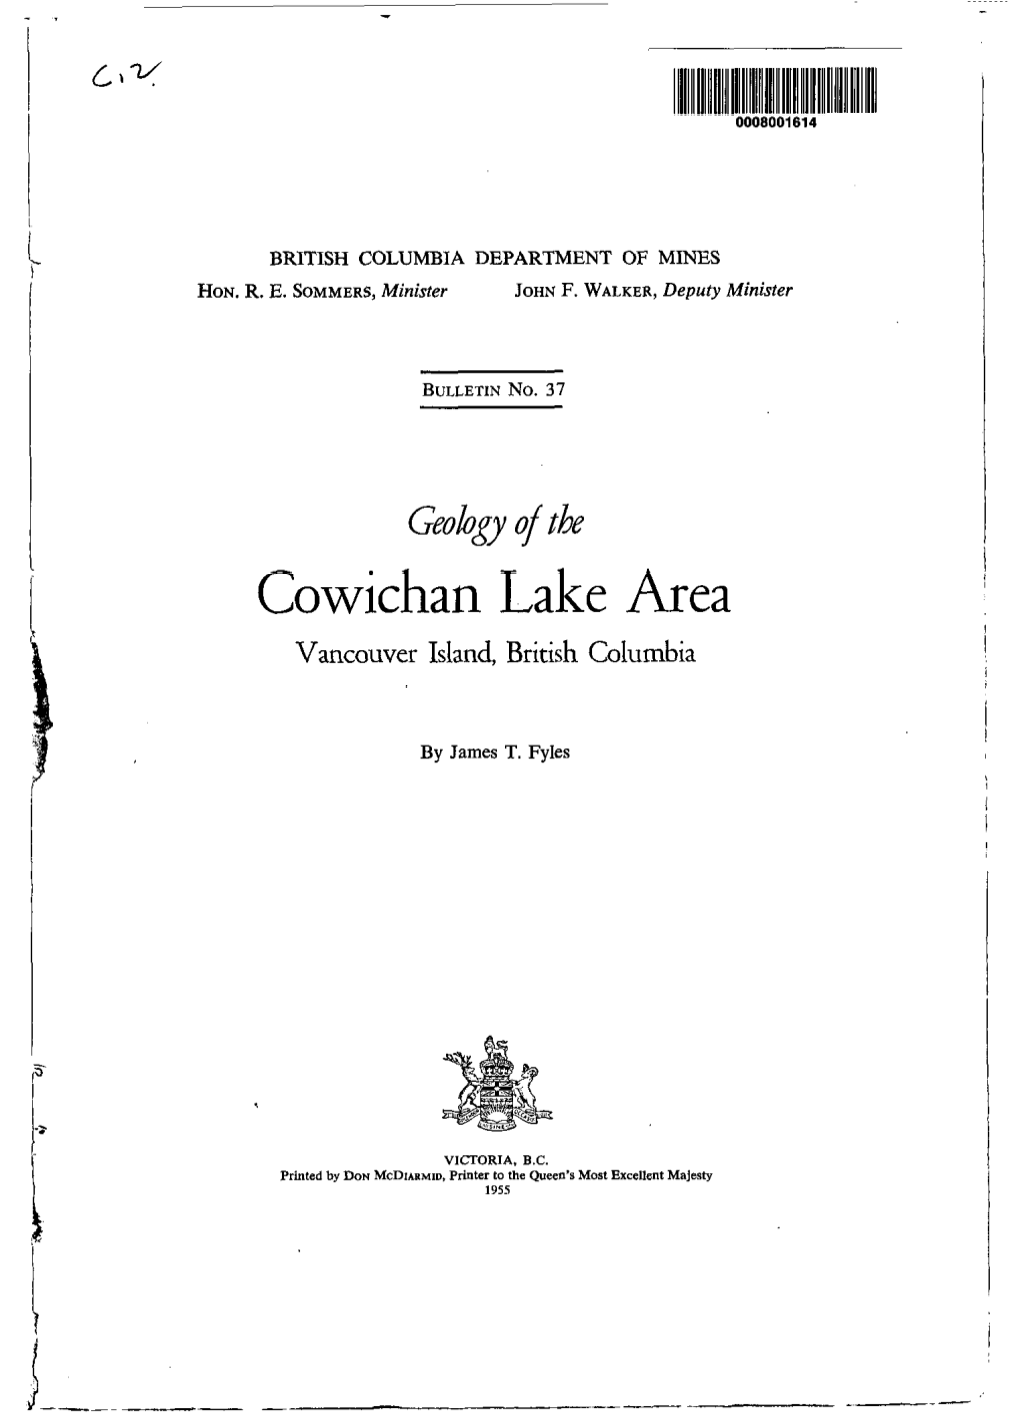 Cowichan Lake Area Vancouver Island, British Columbia